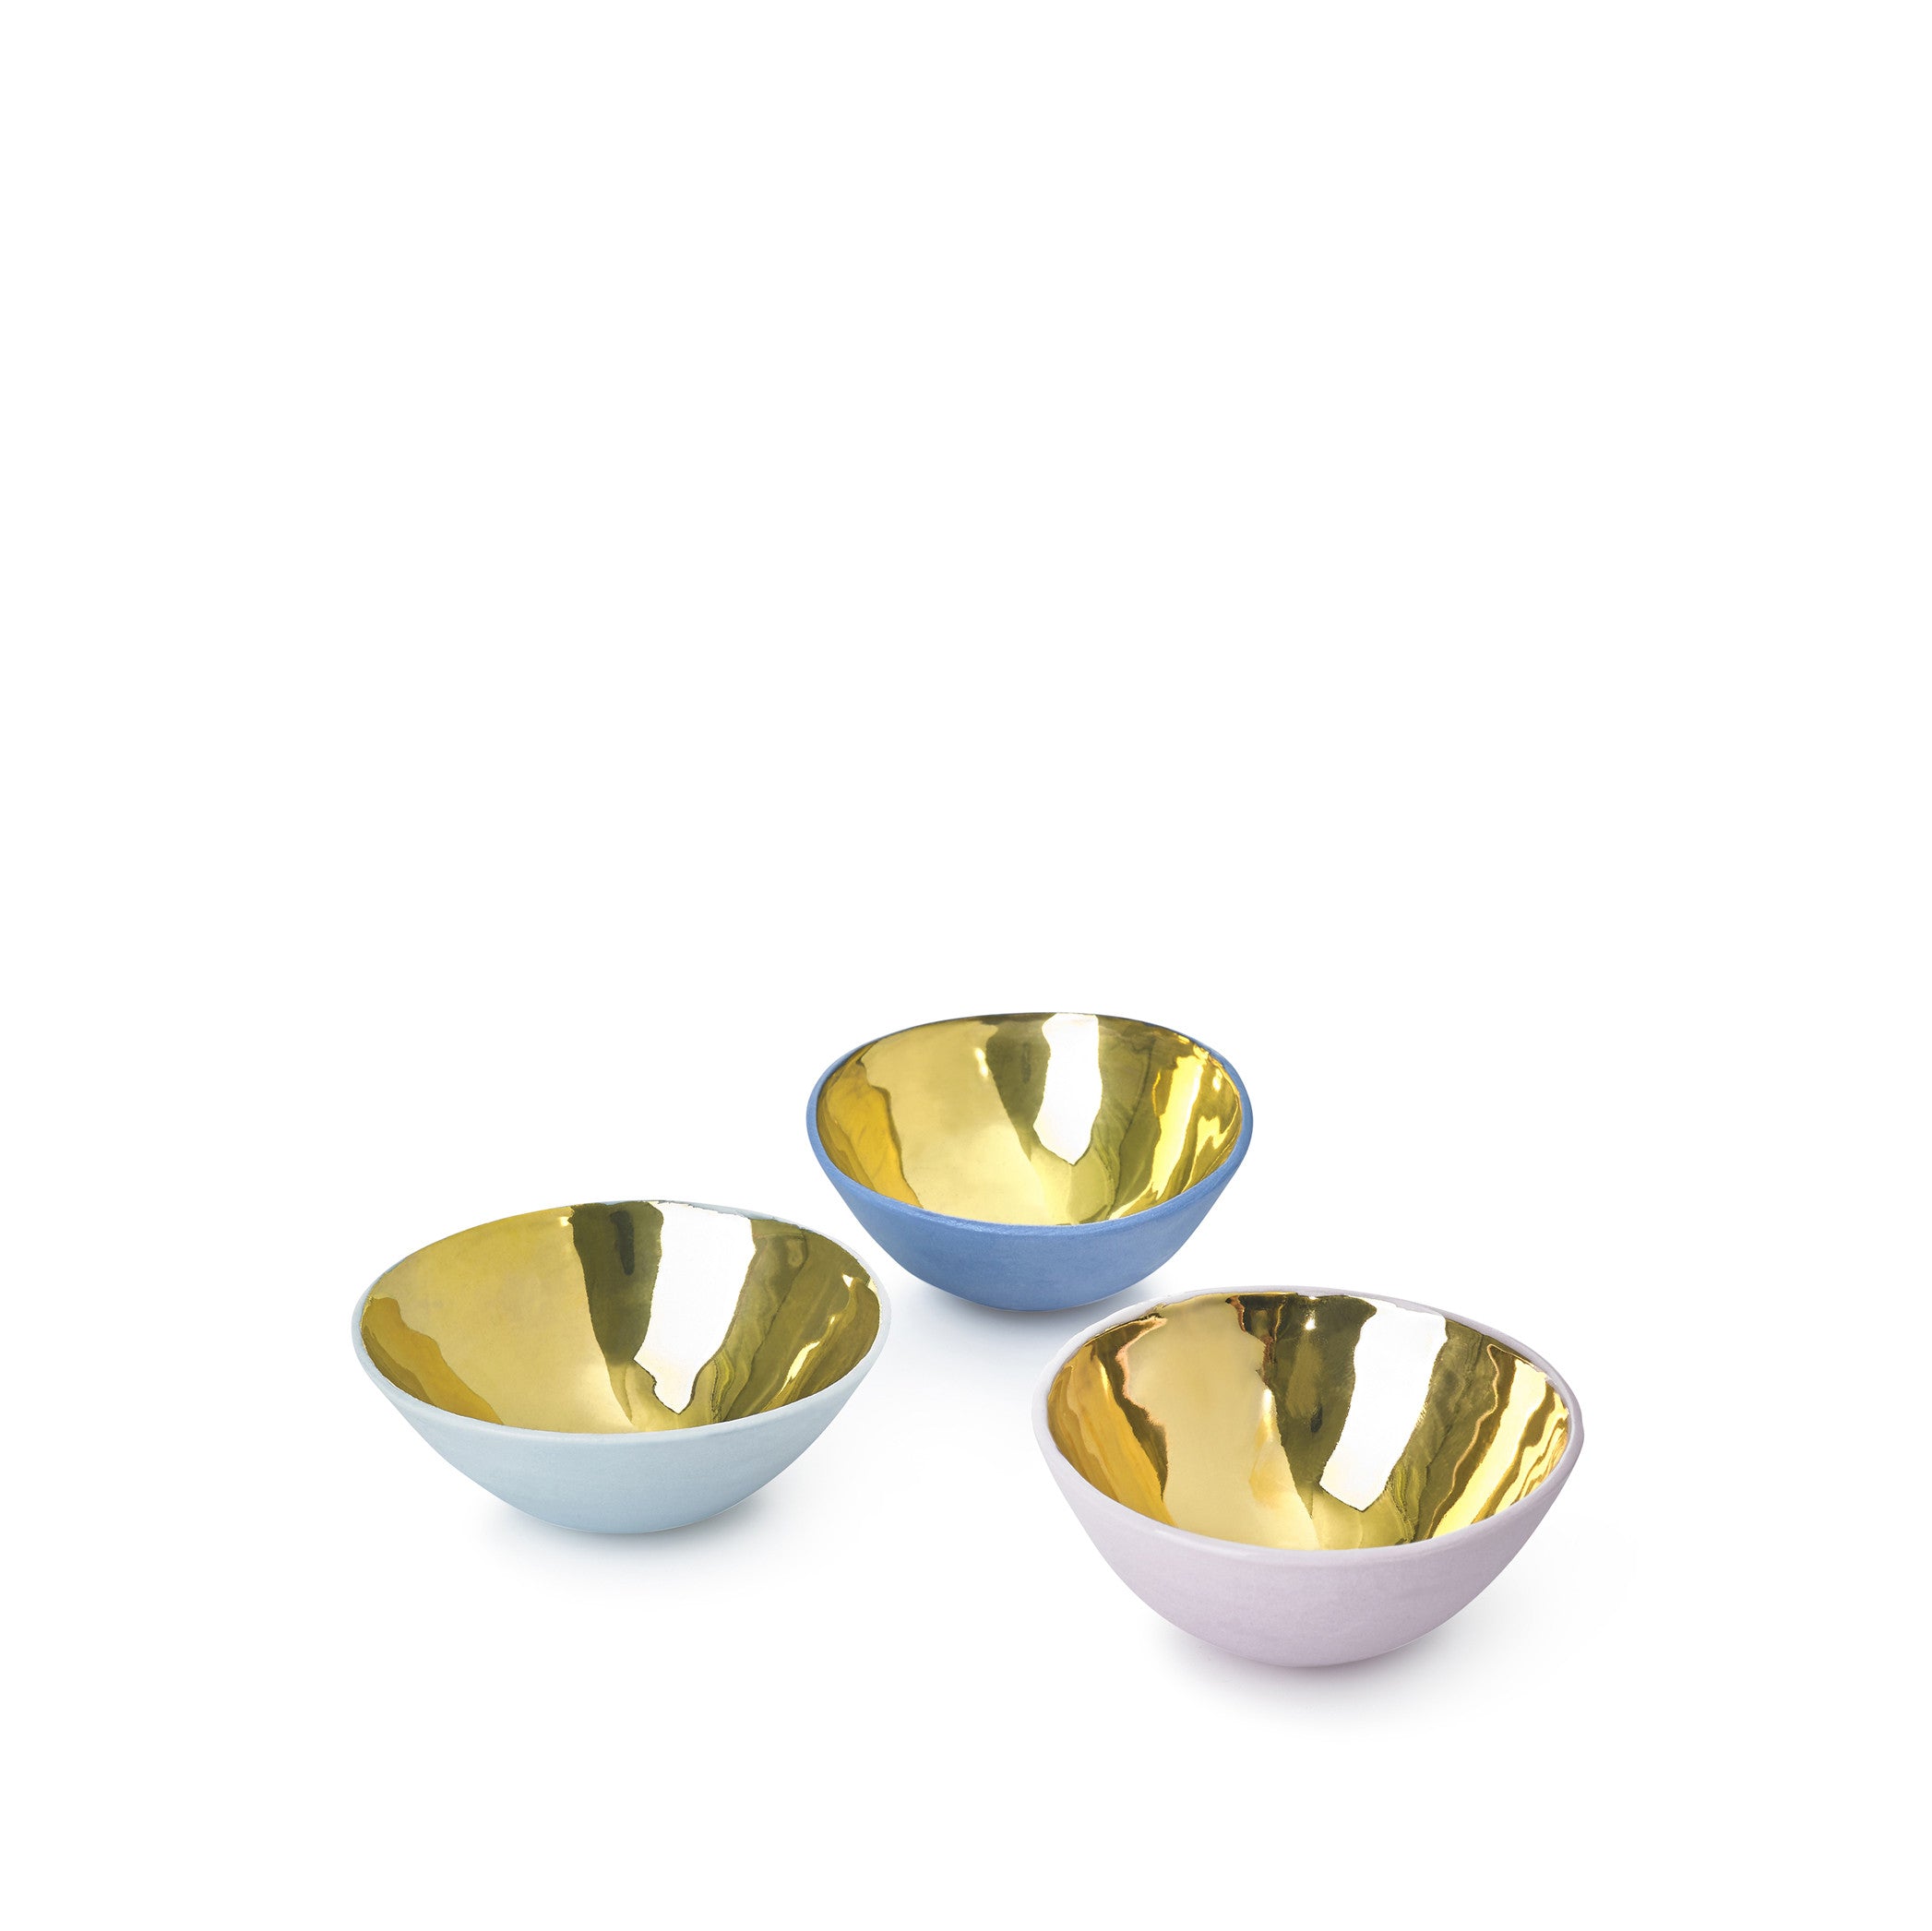 Small Light Blue Ceramic Bowl with Gold Glaze, 6cm